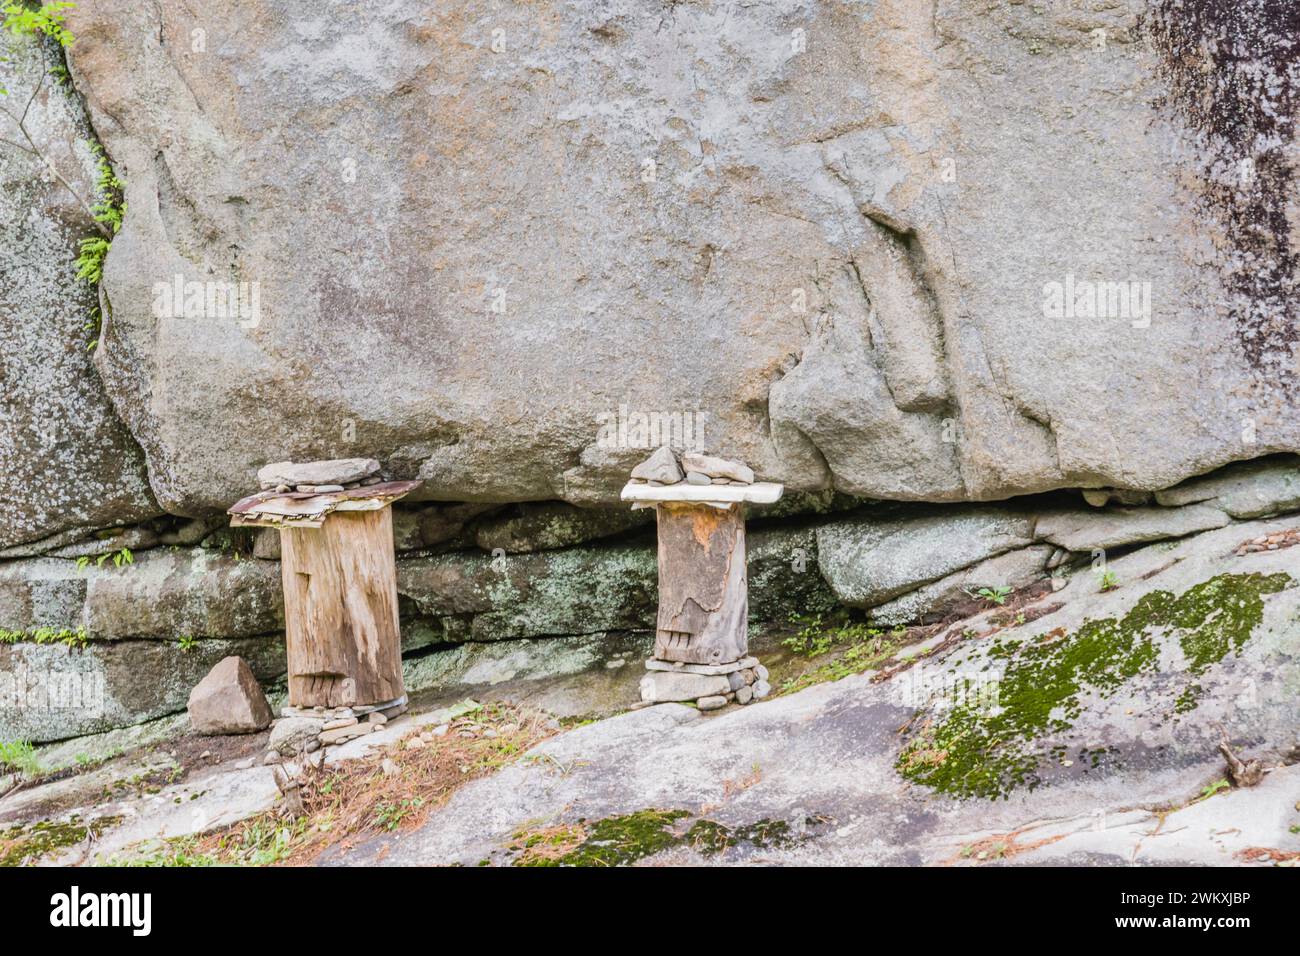 Deux bûches maintenues en place avec des pierres et sculptées pour avoir un œil et une bouche sur le rebord rocheux de la falaise dans la campagne en Corée du Sud Banque D'Images